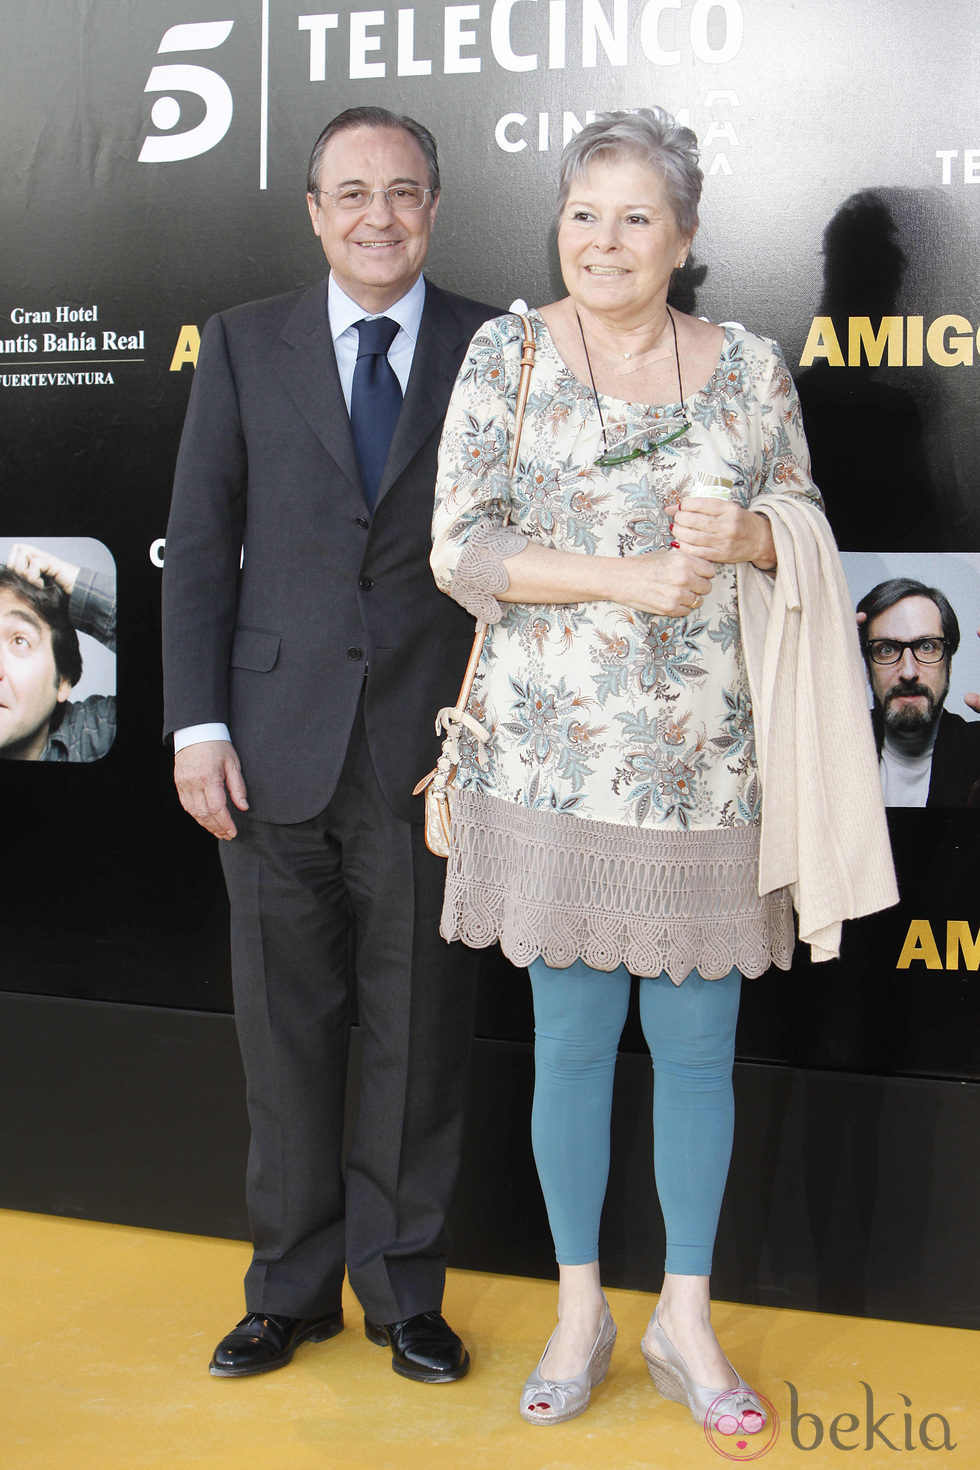 Florentino Pérez en el estreno de 'Amigos'